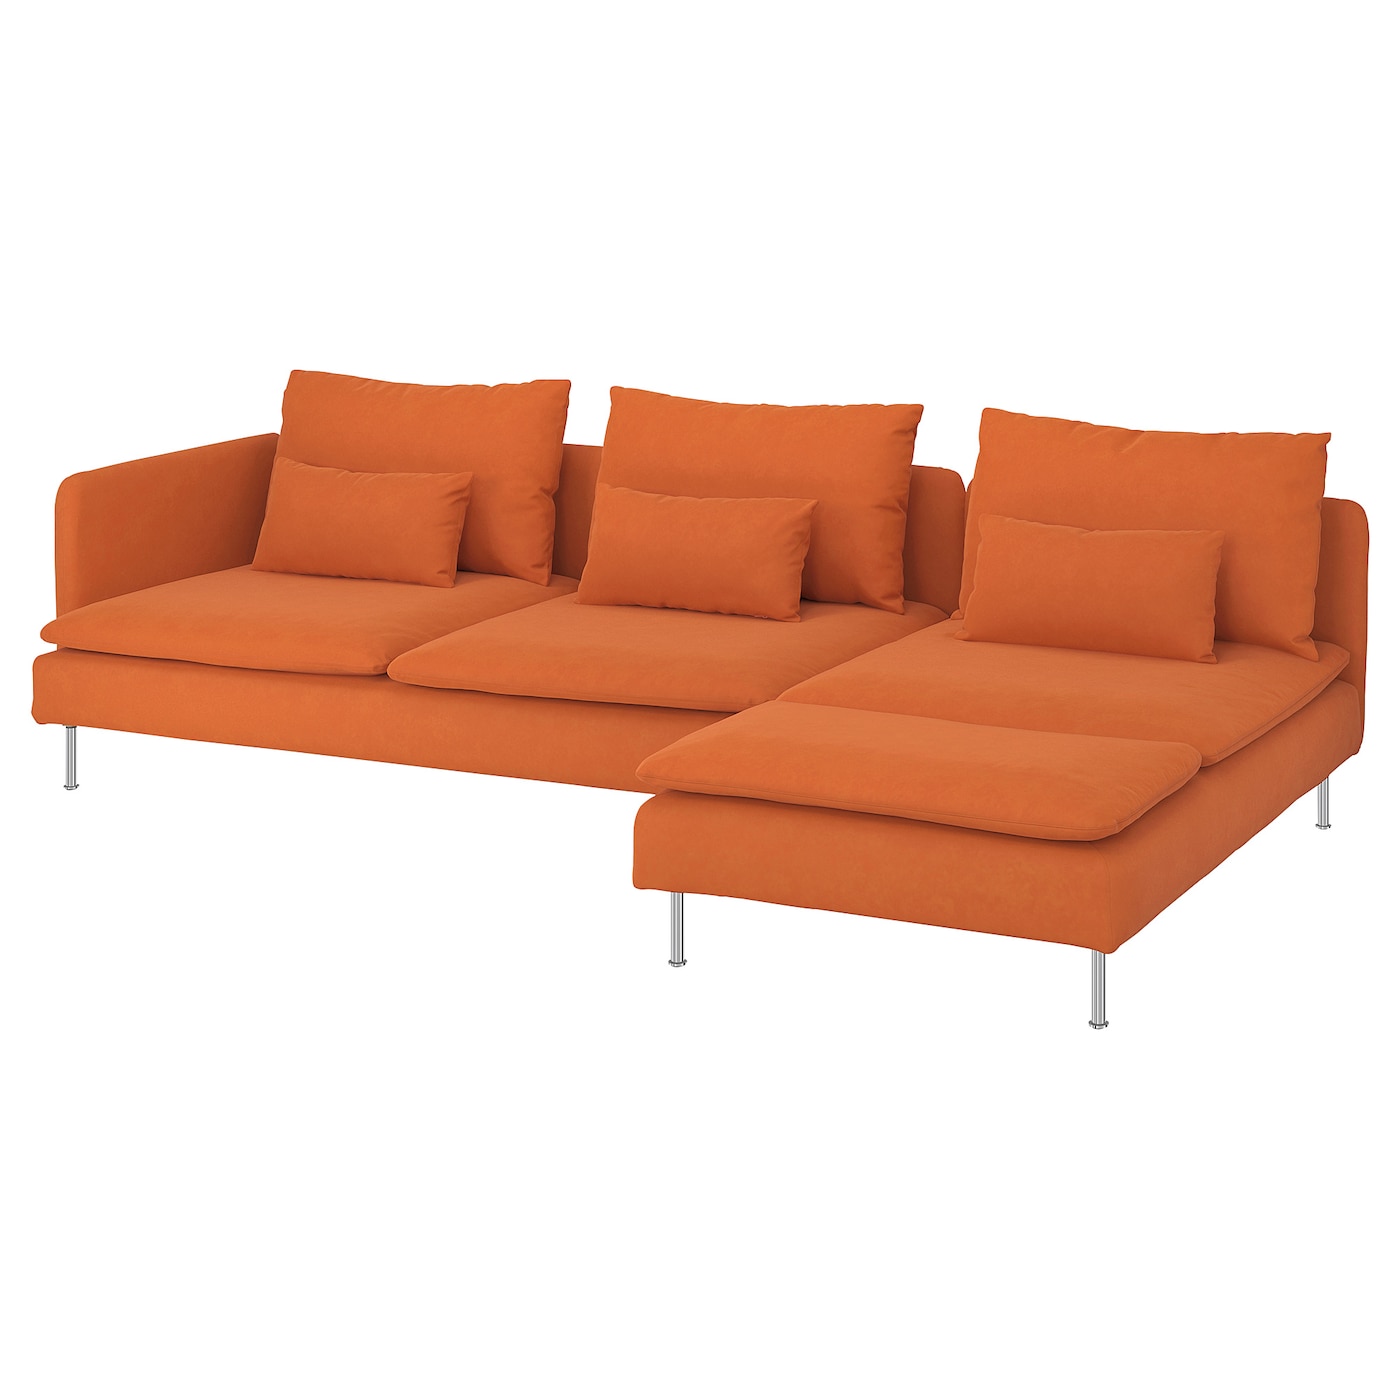 SöDERHAMN - sofa 4-osobowa z szezlongiem i otwarty koniec/samsta pomarańczowy